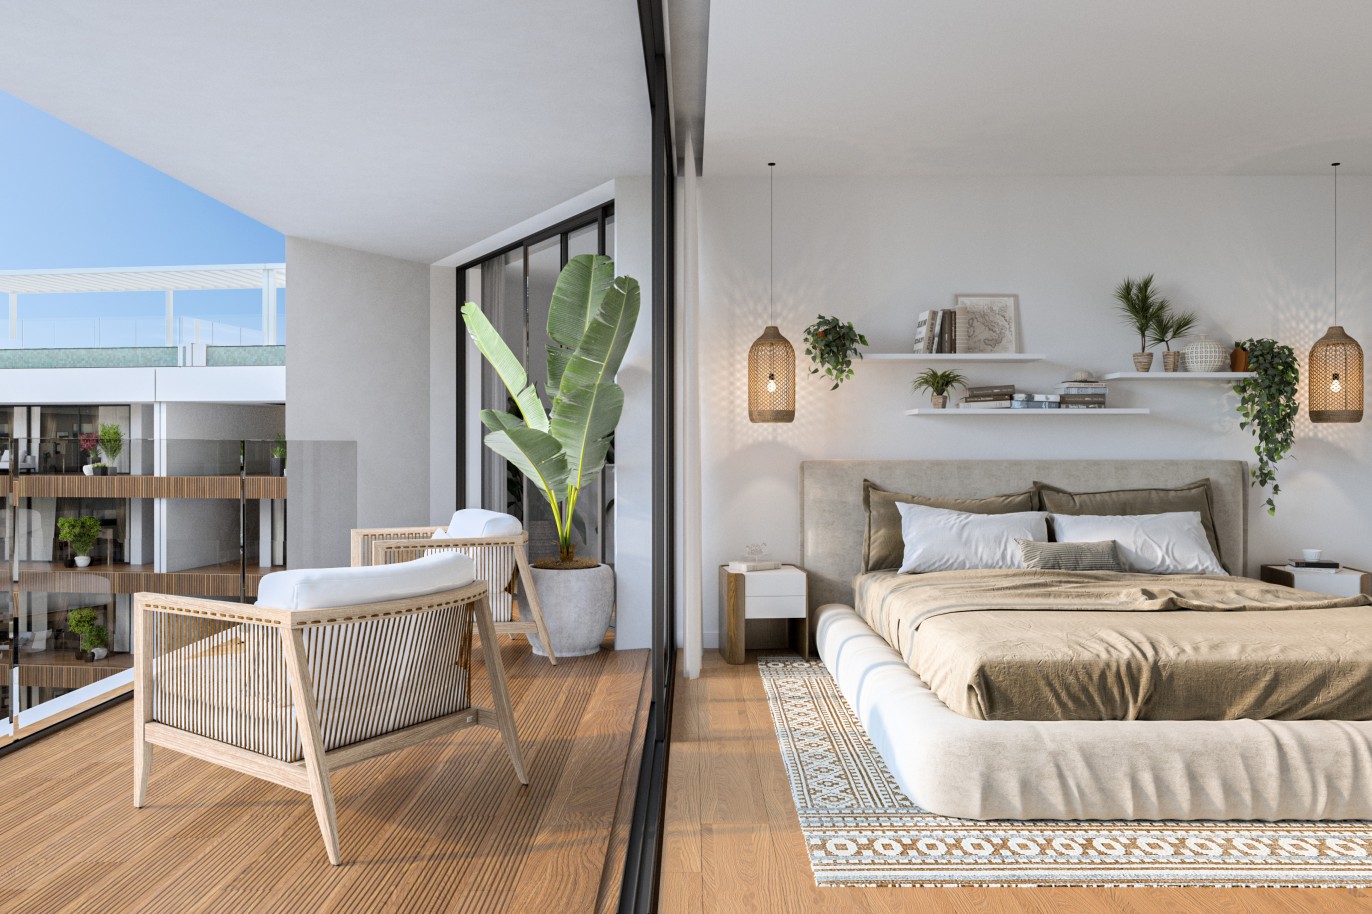 Appartements neufs avec vue sur mer, 1, 2 & 3 chambres, à vendre à Olhão, Algarve_243872